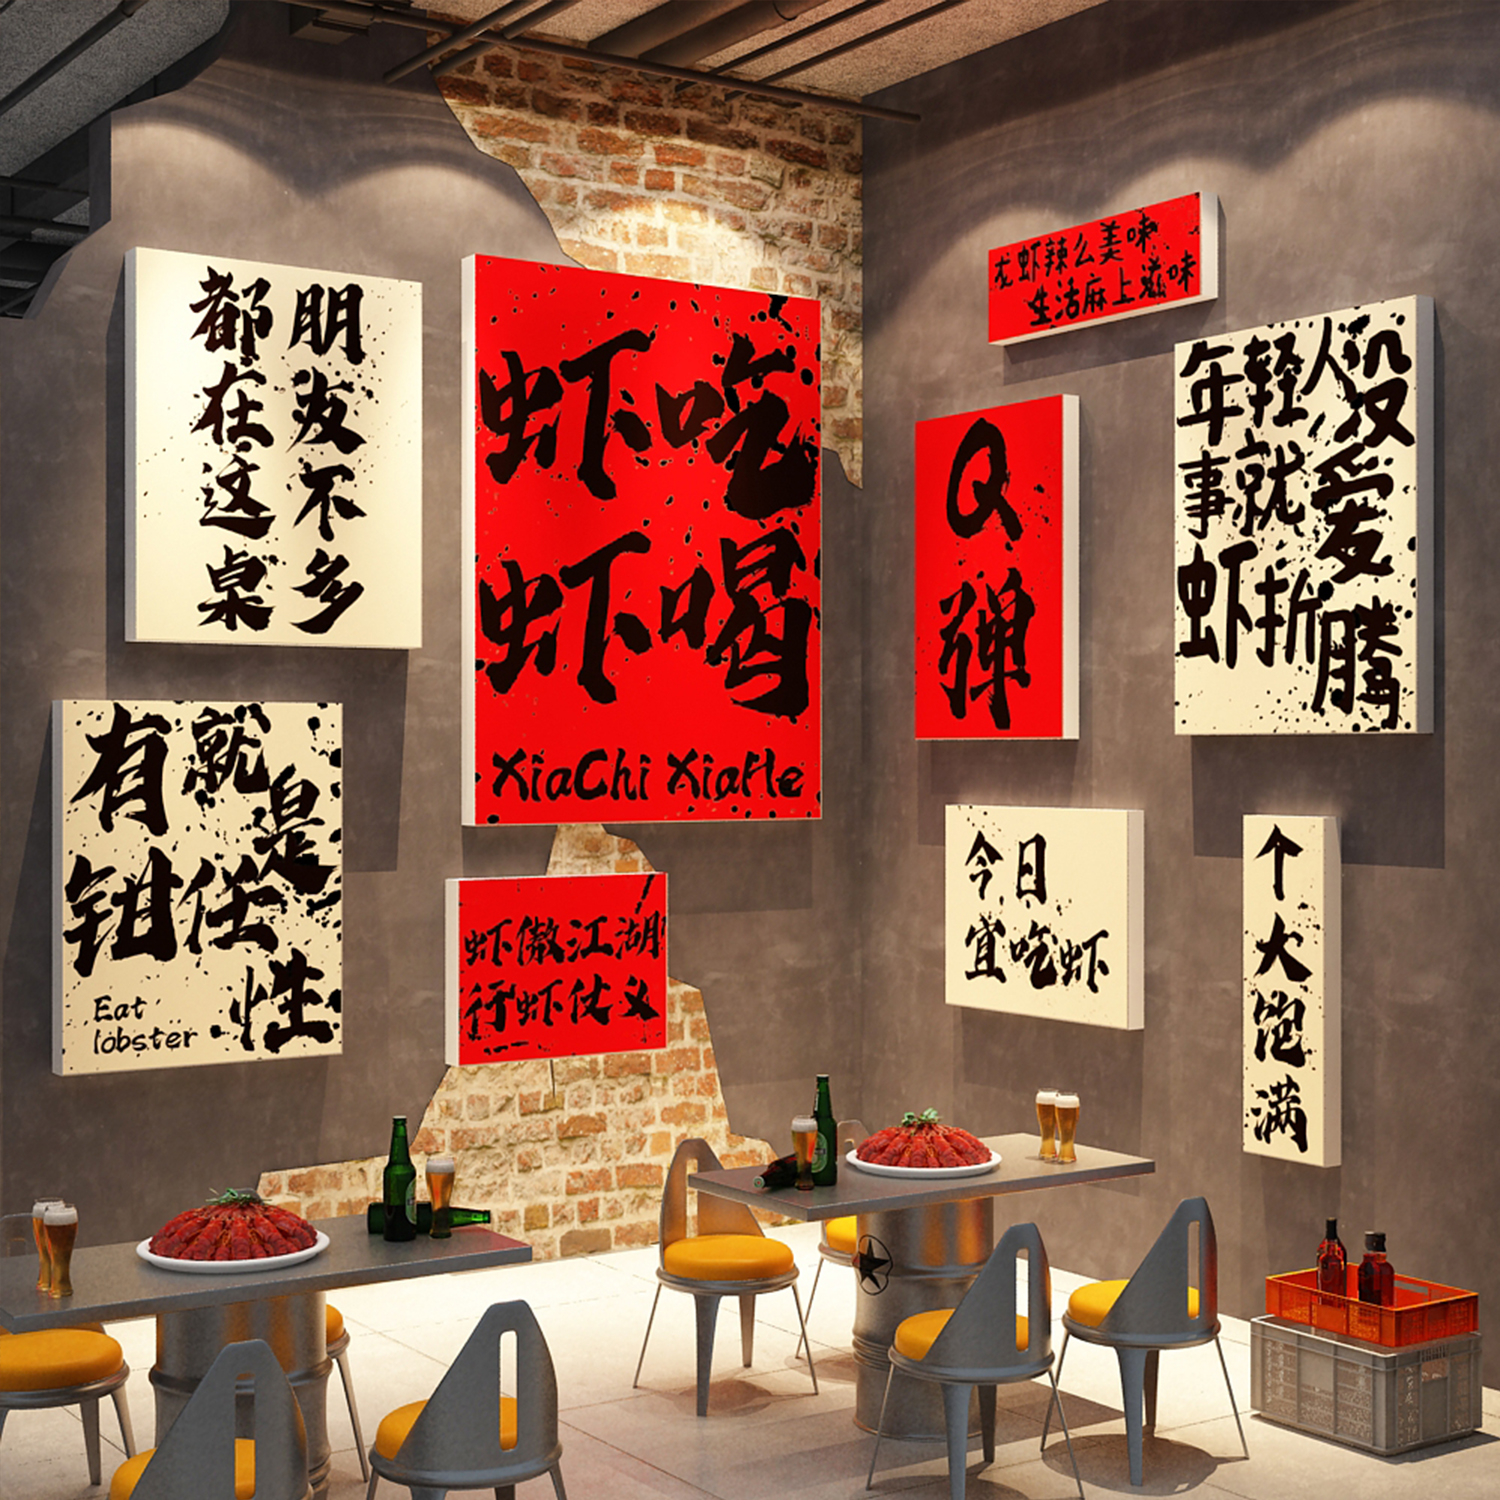 小龙虾店铺墙面装饰品创意布置贴纸画夜宵烧烤餐饮海报设计广告牌